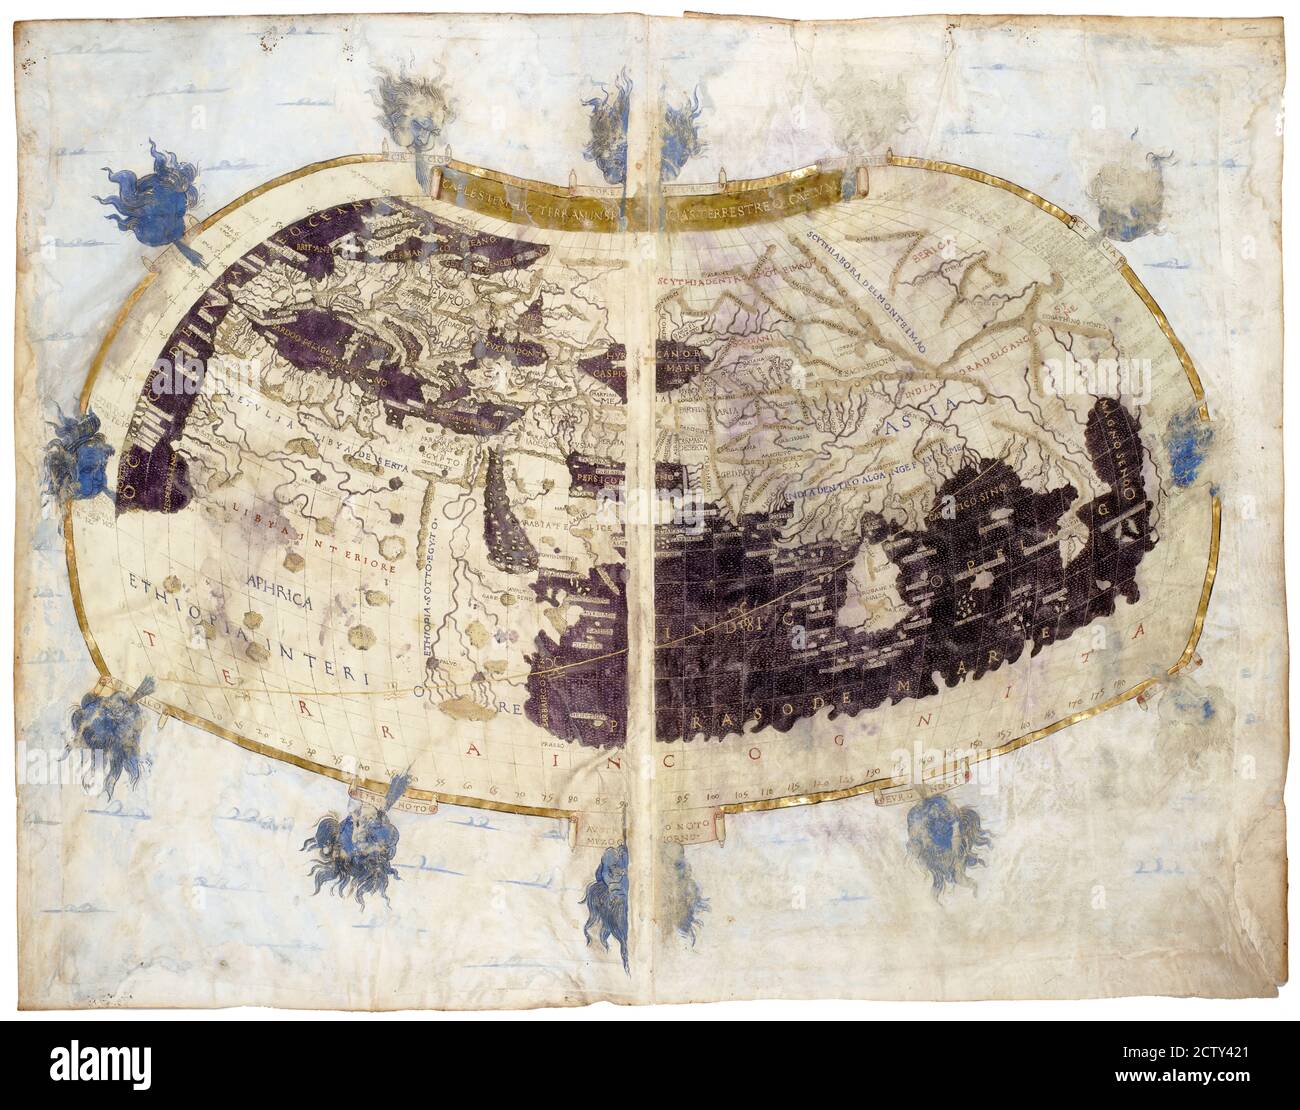 Carte du monde tirée d'un livre médiéval rare Géographie de Claudius Ptolémée publié en 1480. Carte ancienne avec terre et mer. Concept d'antique Banque D'Images